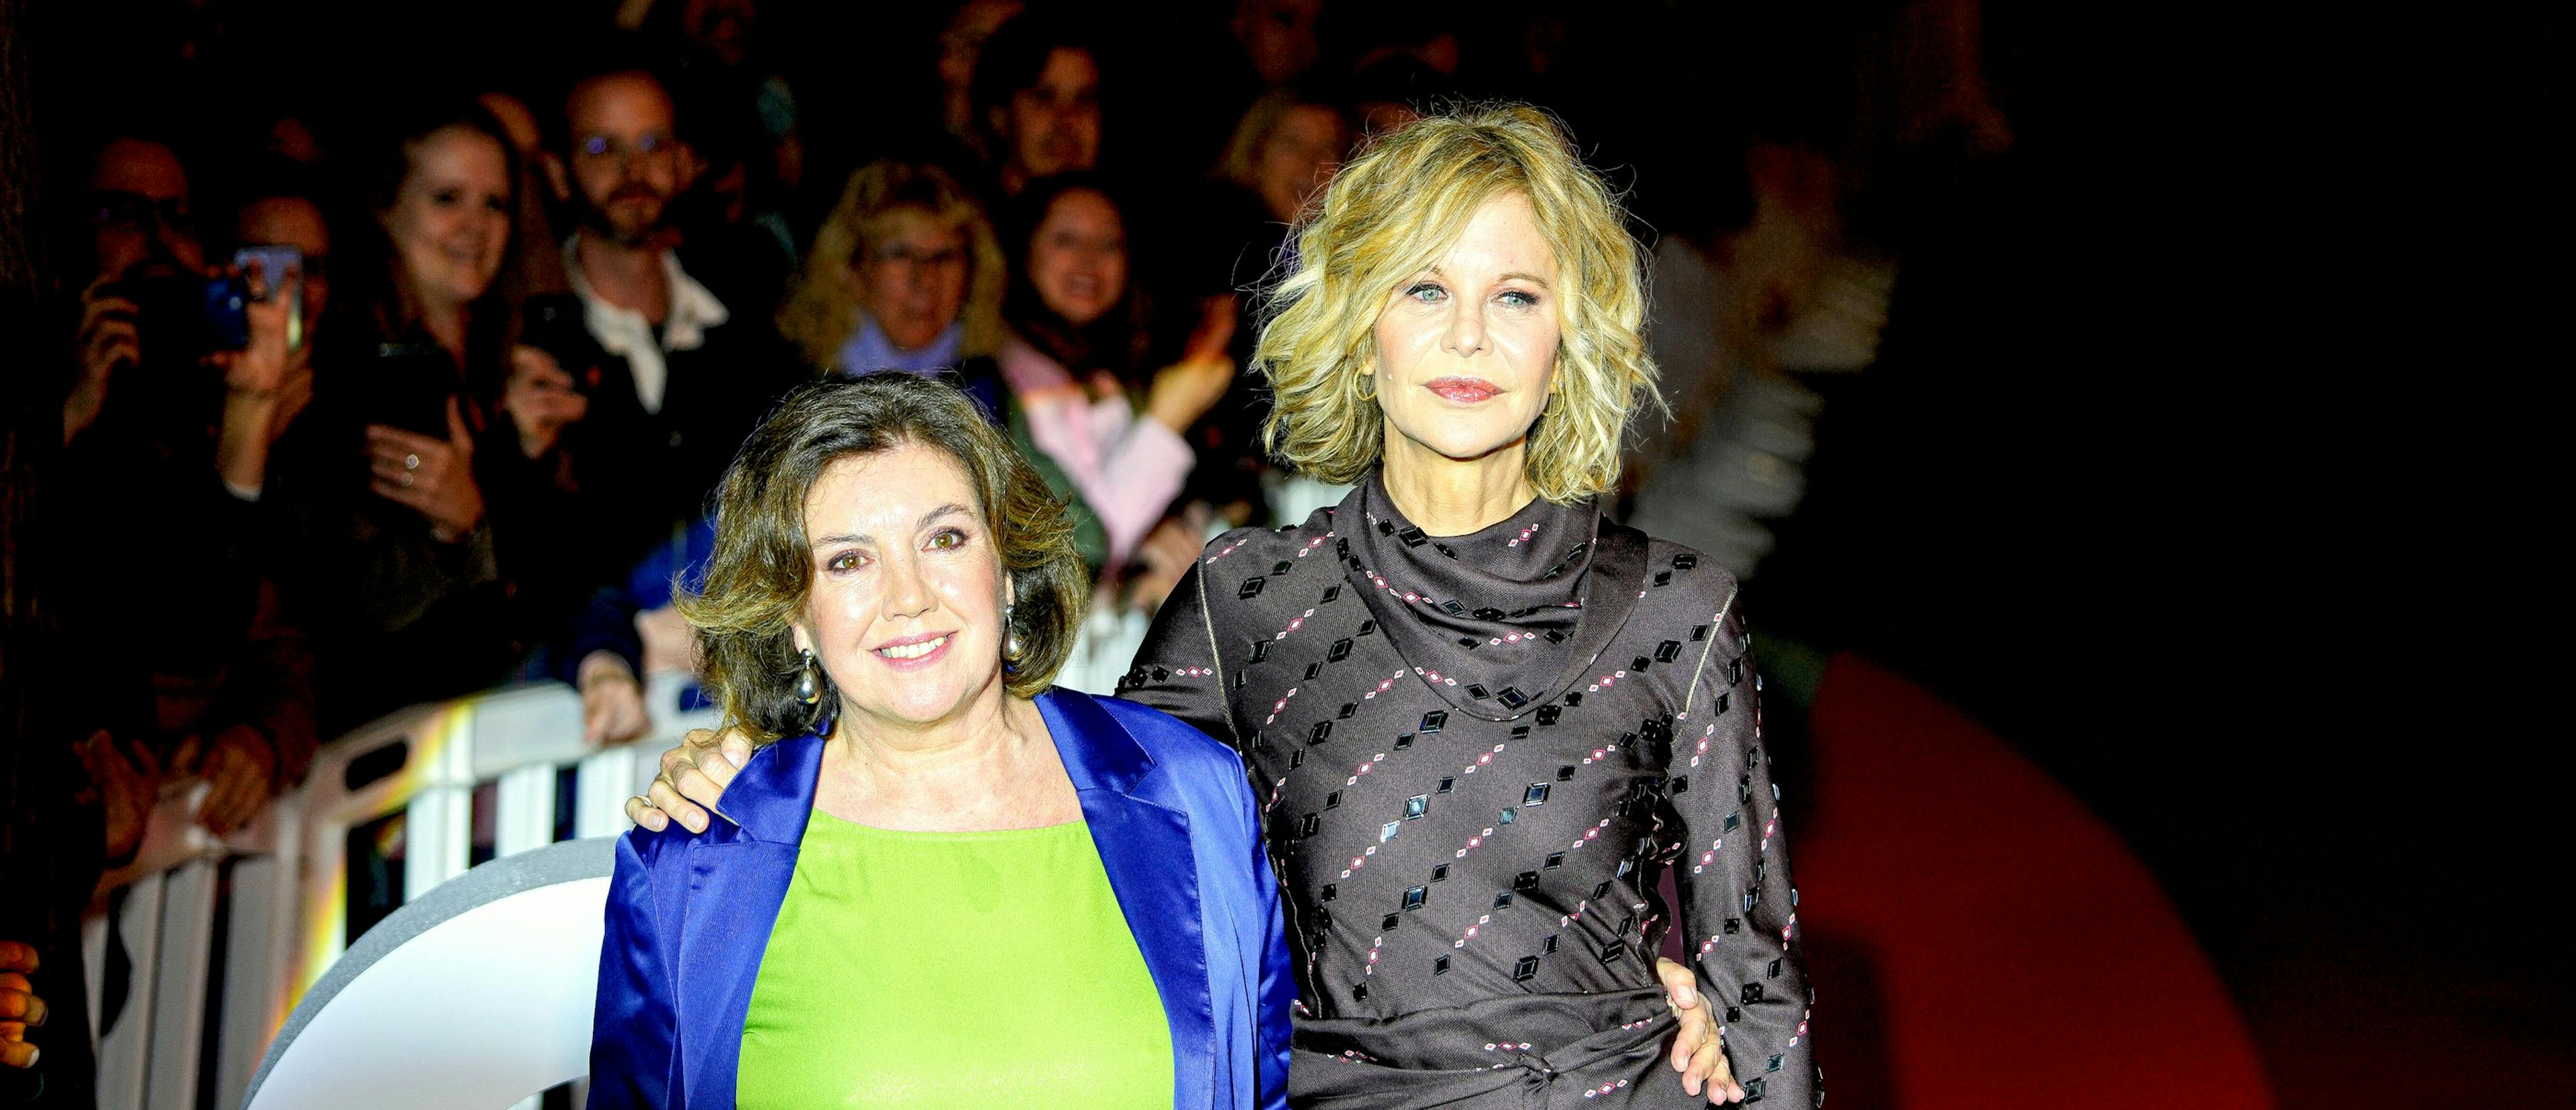 La directora del BCN Film Fest, Conxita Casanovas, posa junto a Meg Ryan a la entrada de los Cines Verdi